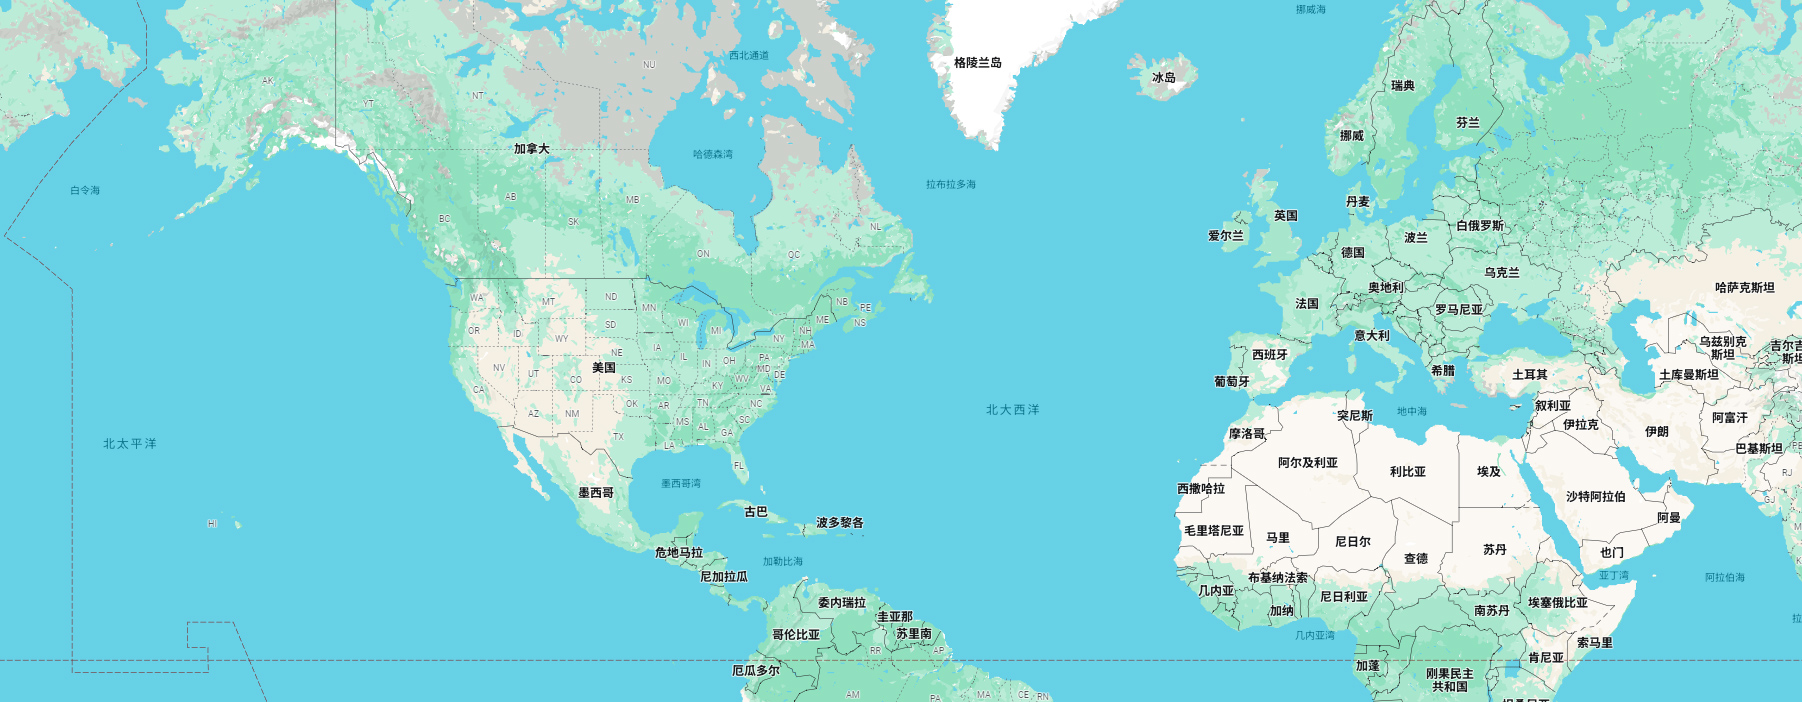 谷歌地图Google map：如何实时掌握路况，为您的出行保驾护航